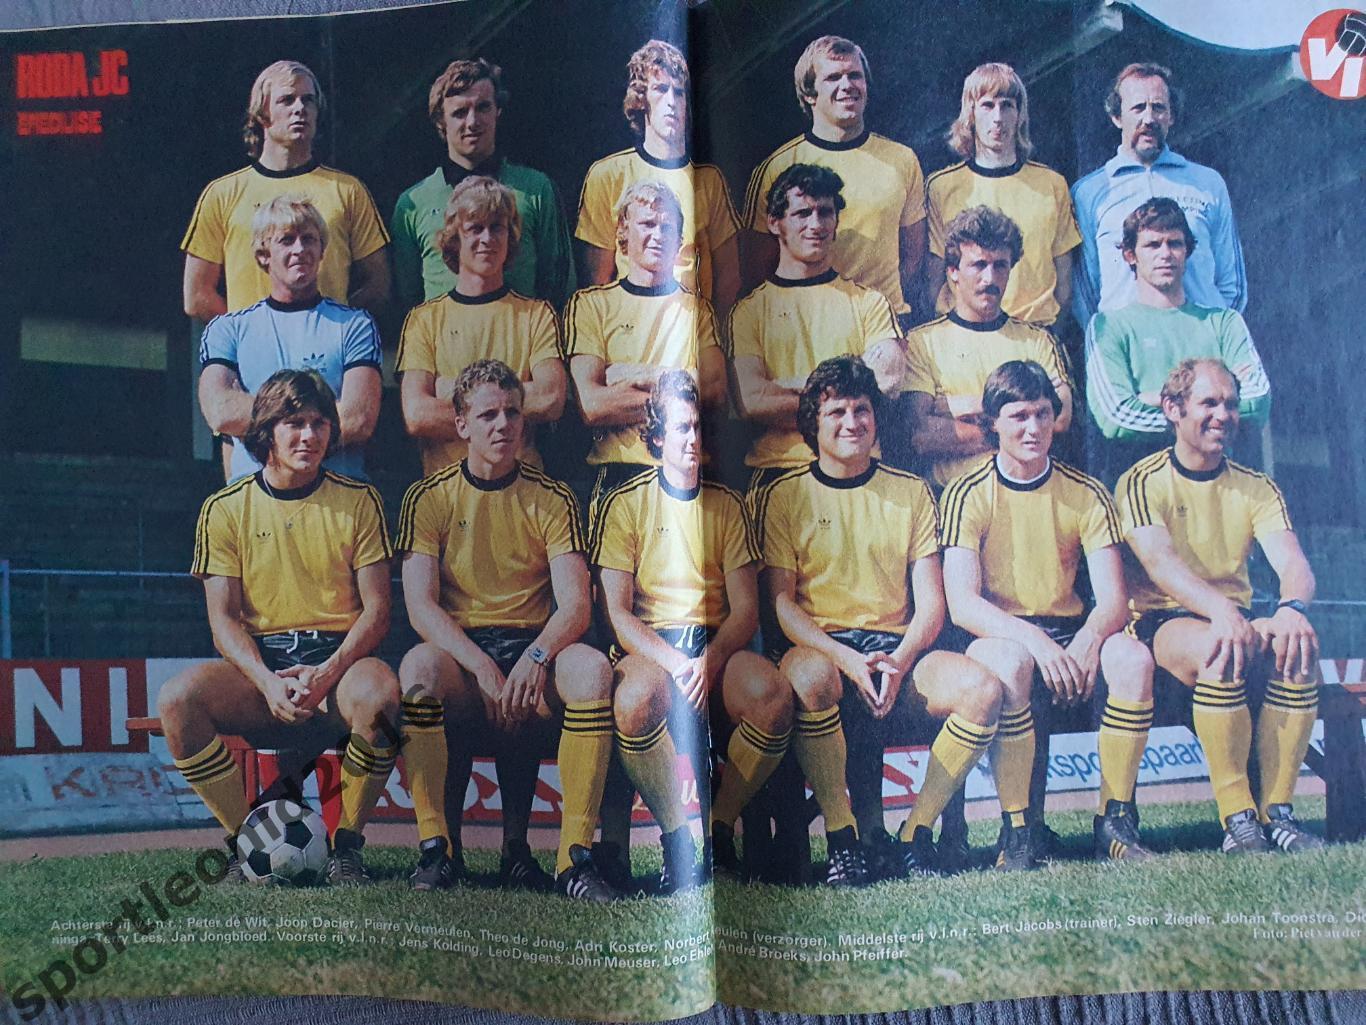 Voetbal International 1977 51 выпуск годовая подписка .1 4